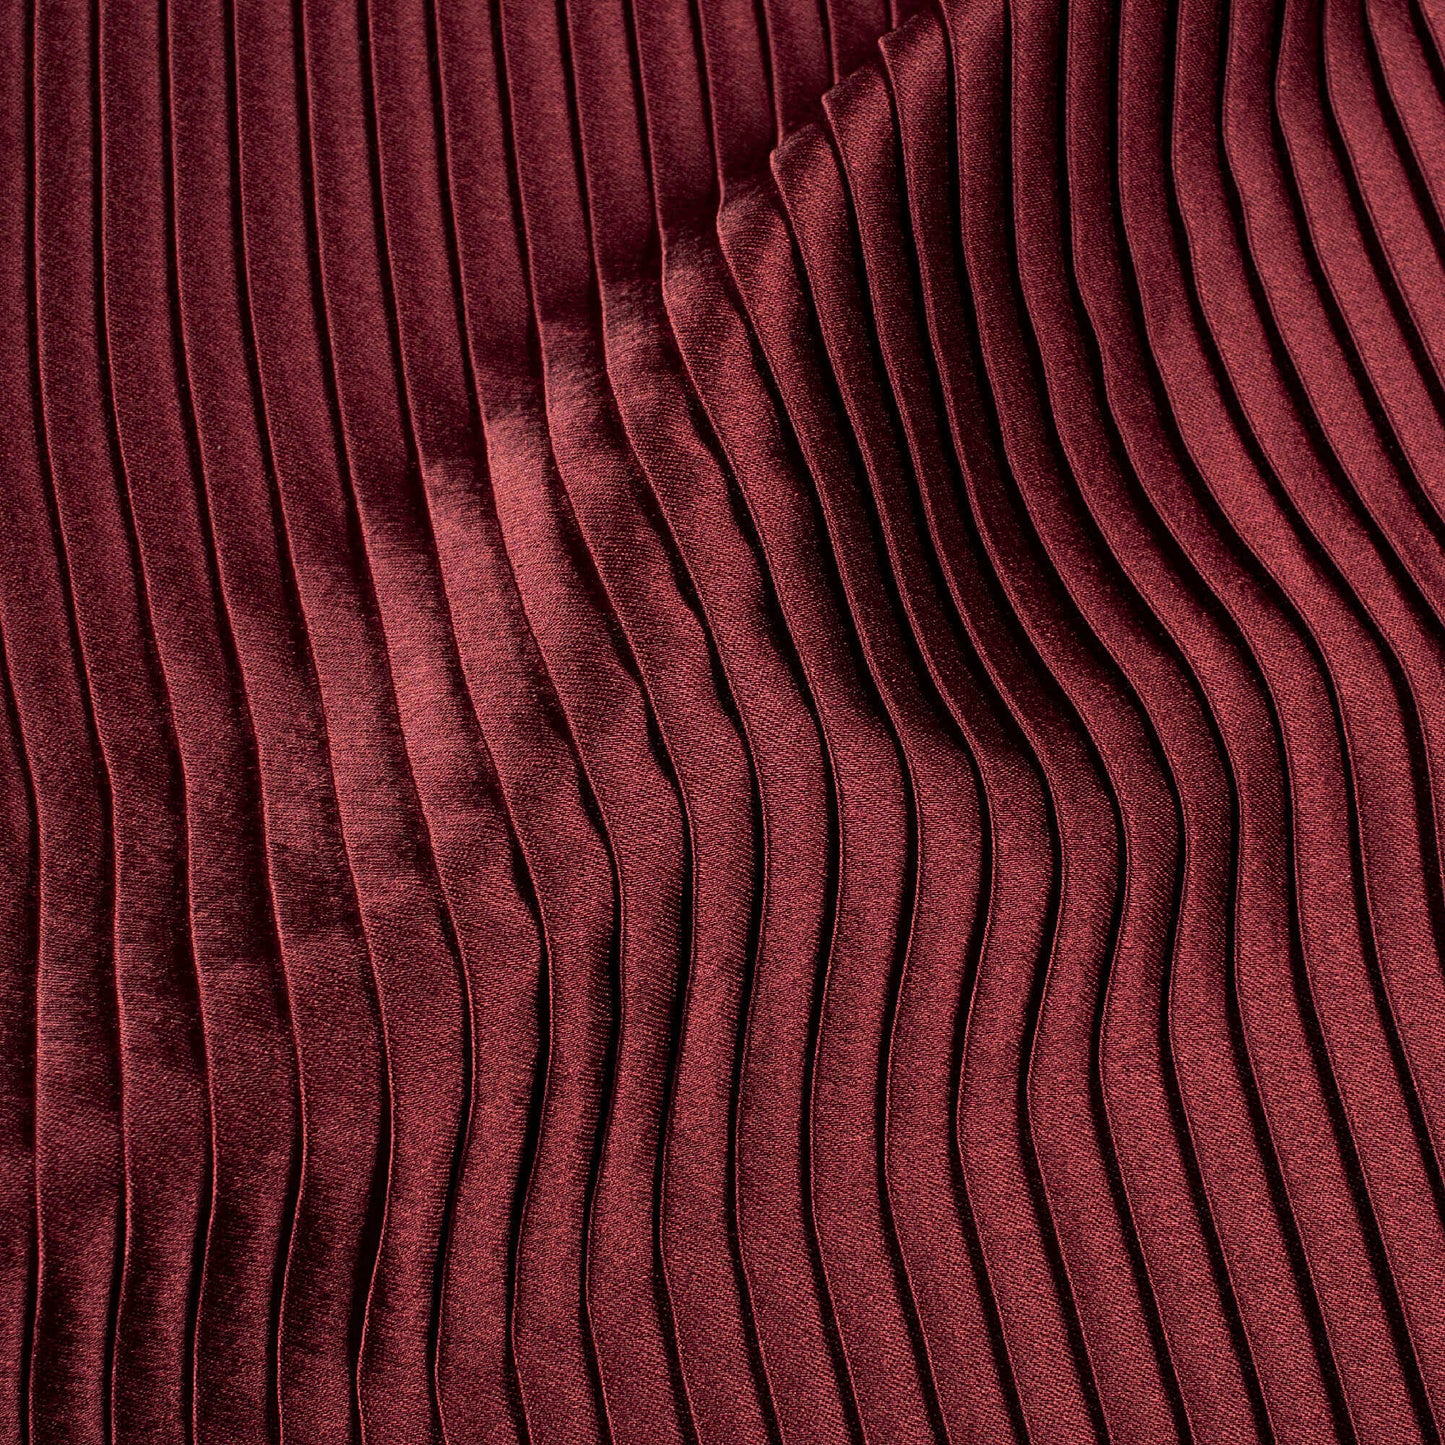 Maroon Plain Japan Satin Pleated Fabric